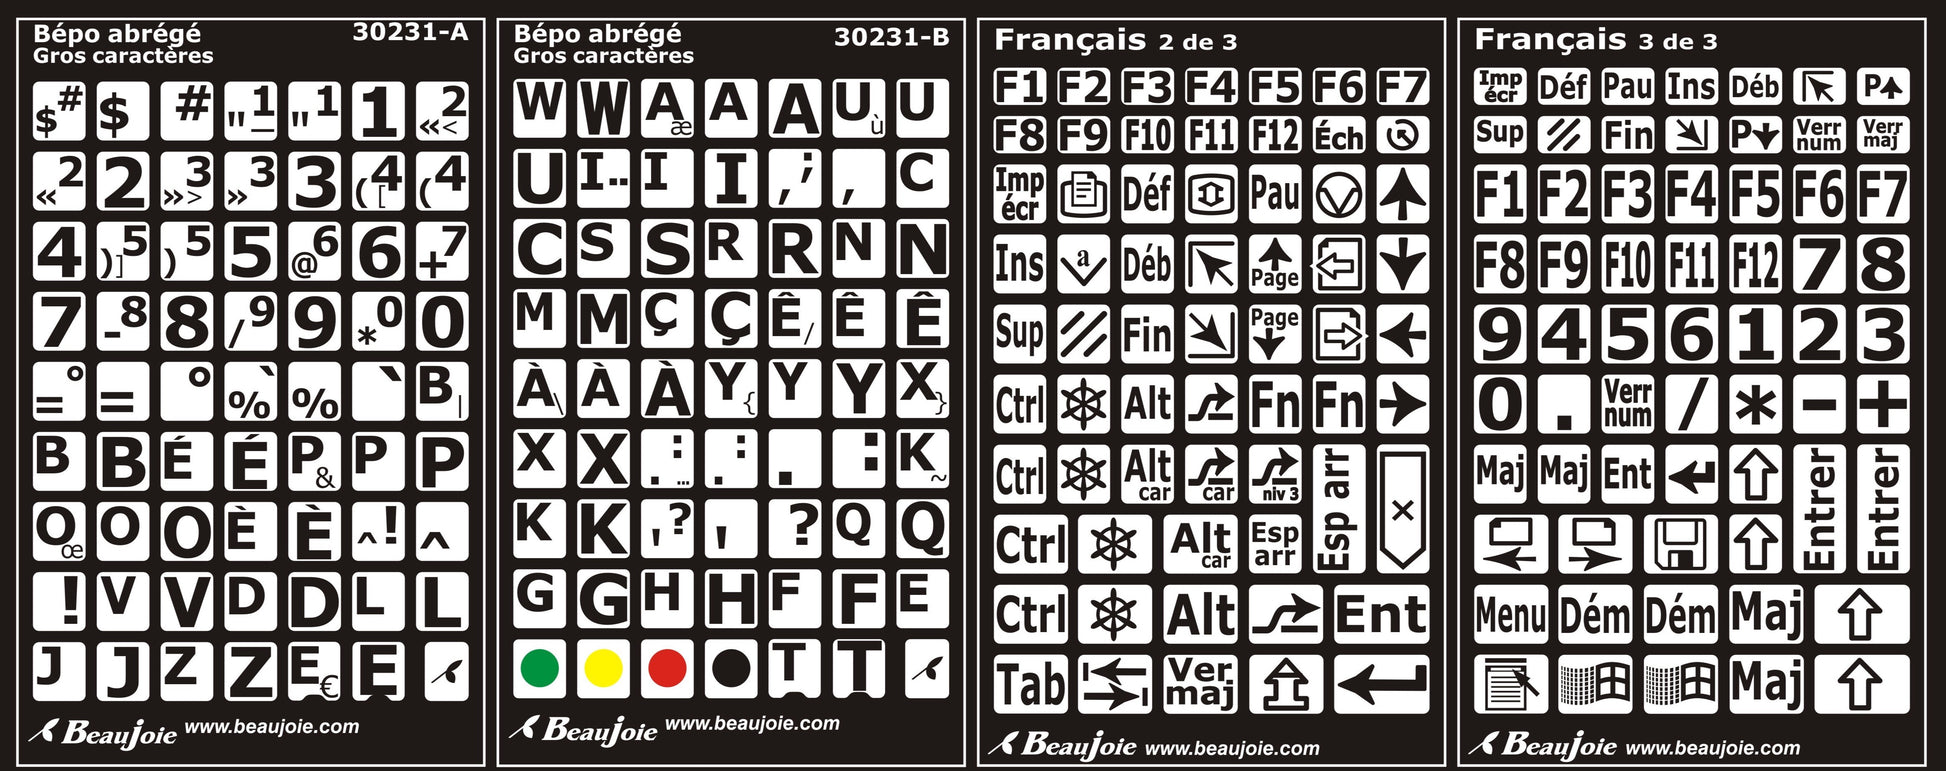 Autocollants lettres majuscules pour clavier BÉPO Noir sur blanc - 30231